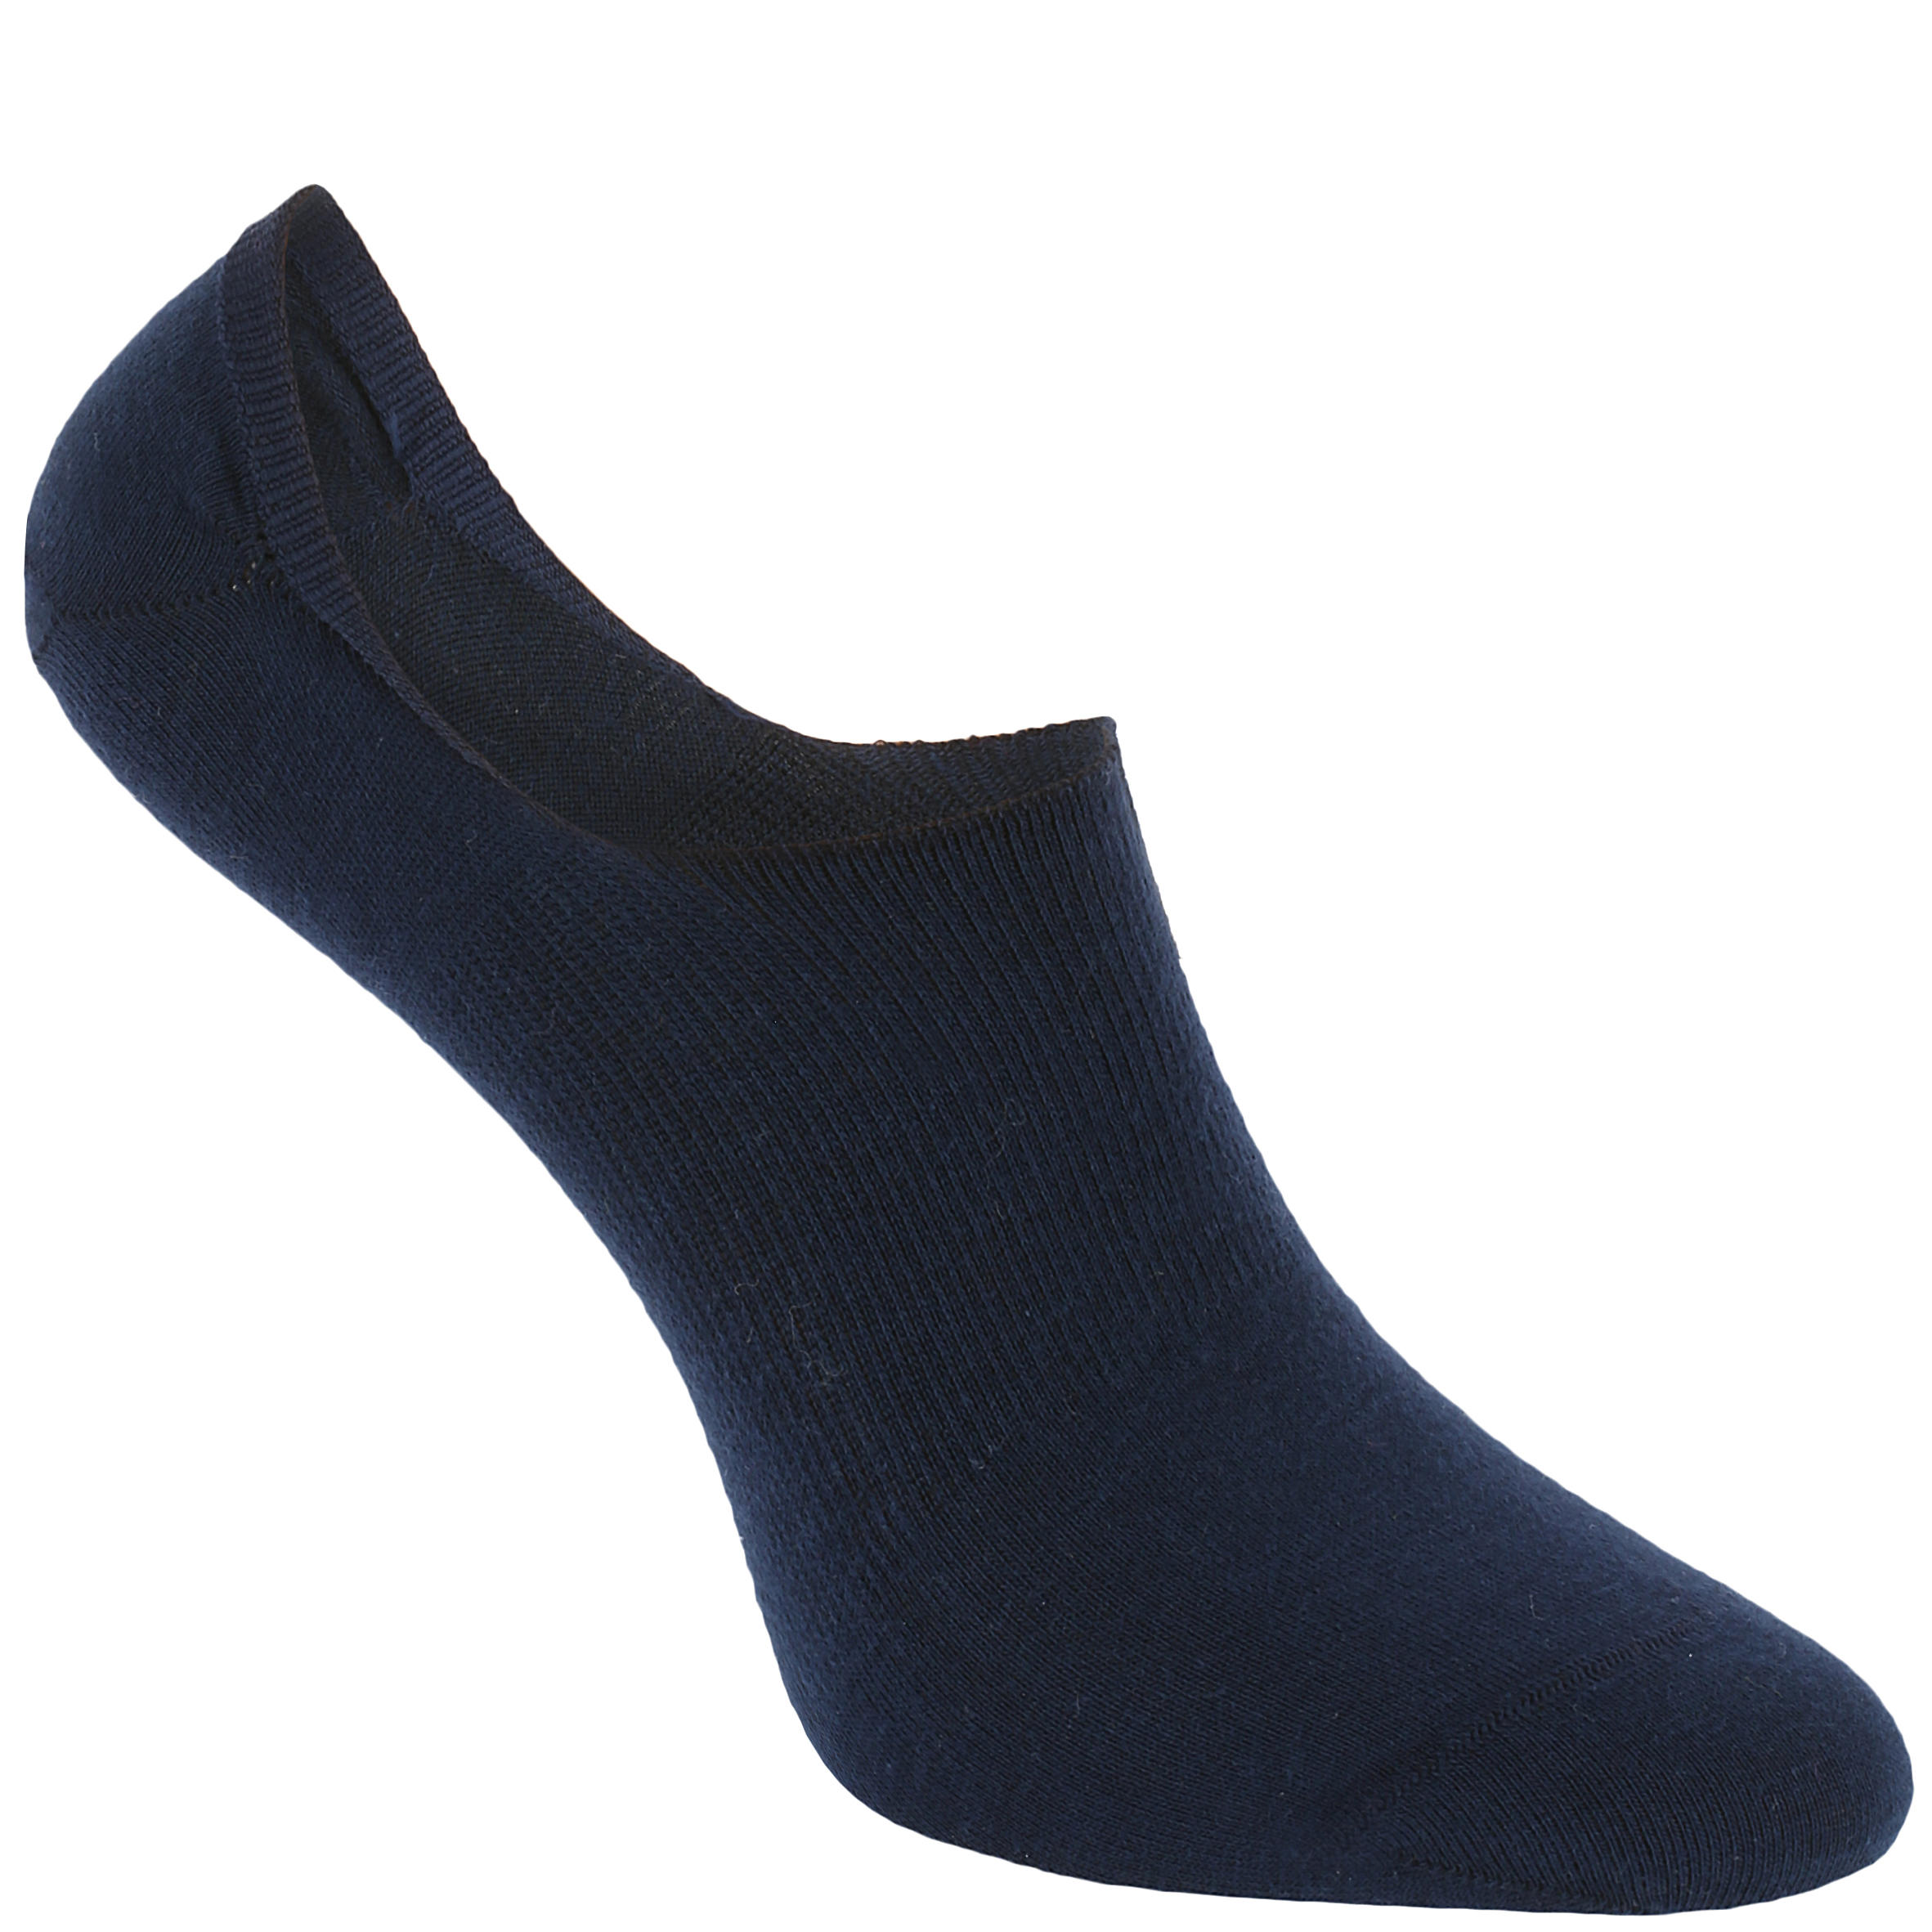 decathlon women's socks